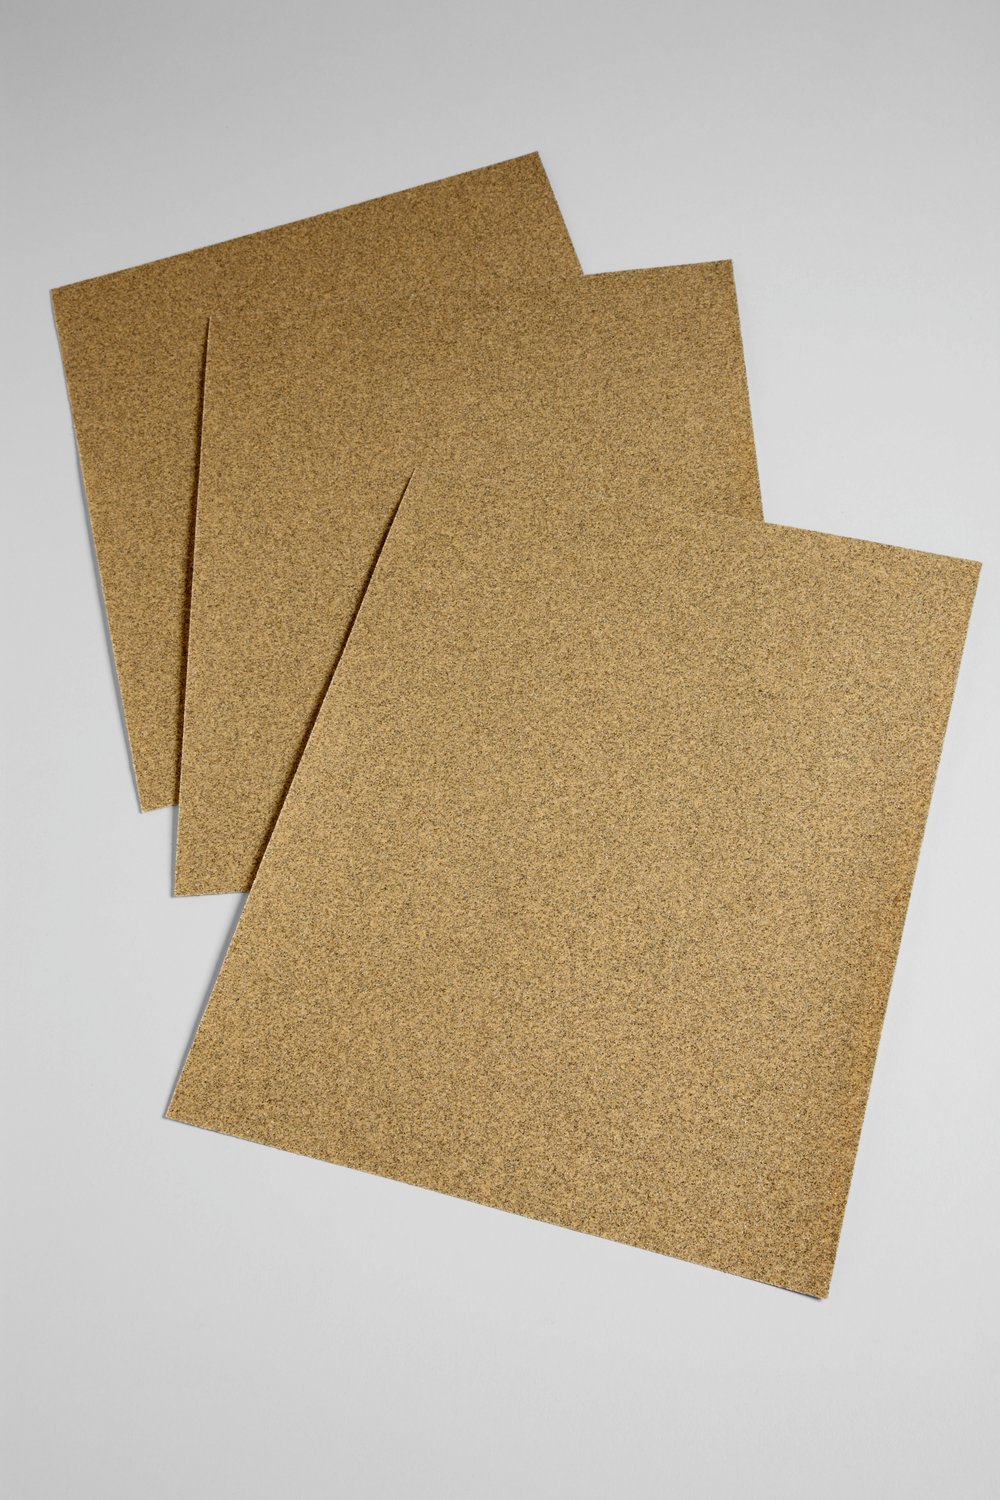 7000120219 - 3M Paper Sheet 336U, 2114, 100 C-weight, 9 in x 11 in, 100/Pac, 1000
ea/Case